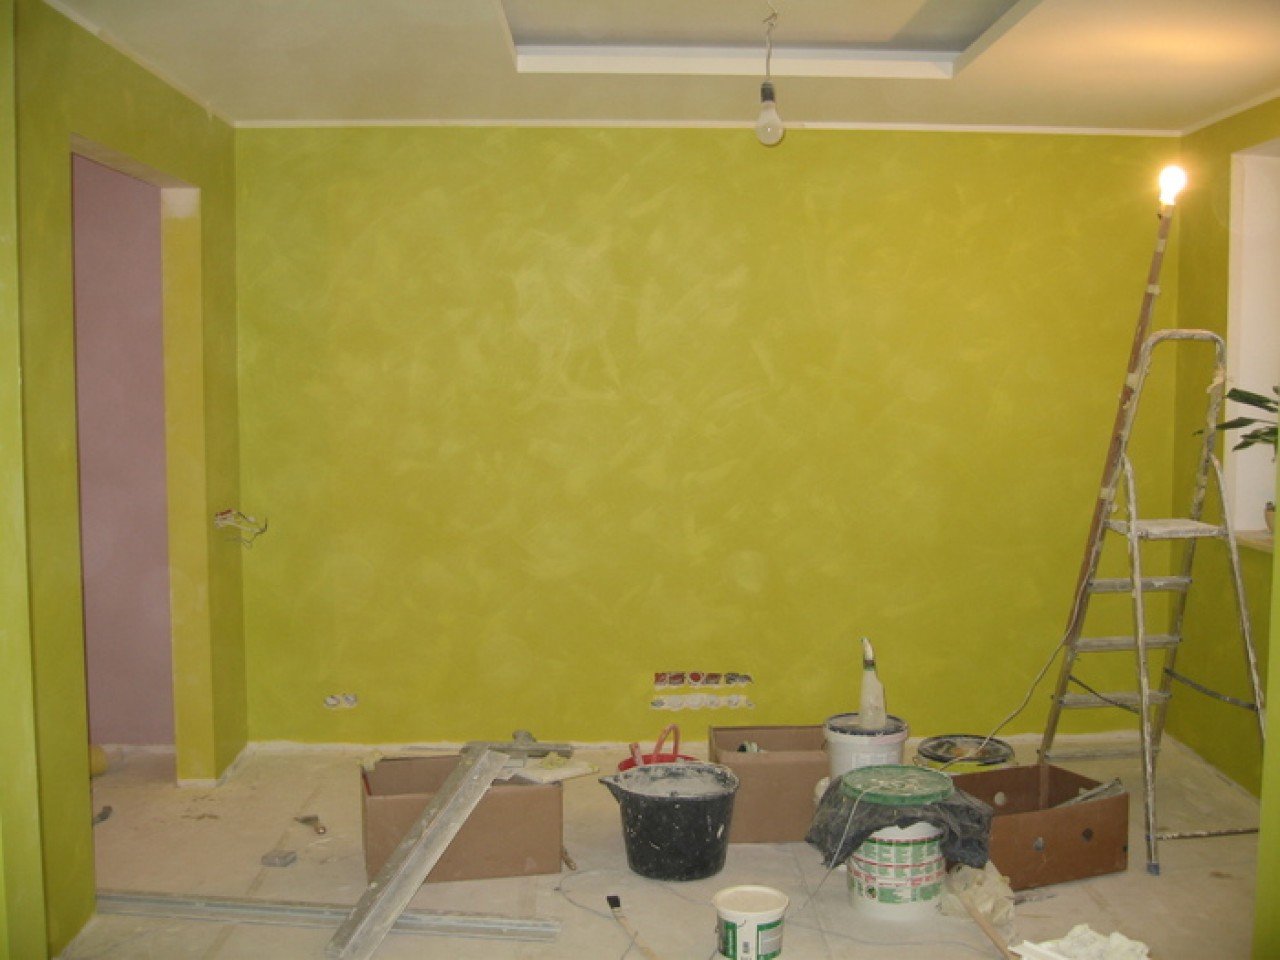 Территория ремонта ремонт квартир. Покраска стен. Покрашенные стены. Покрашенные стены в квартире. Красивая краска для стен в квартире.